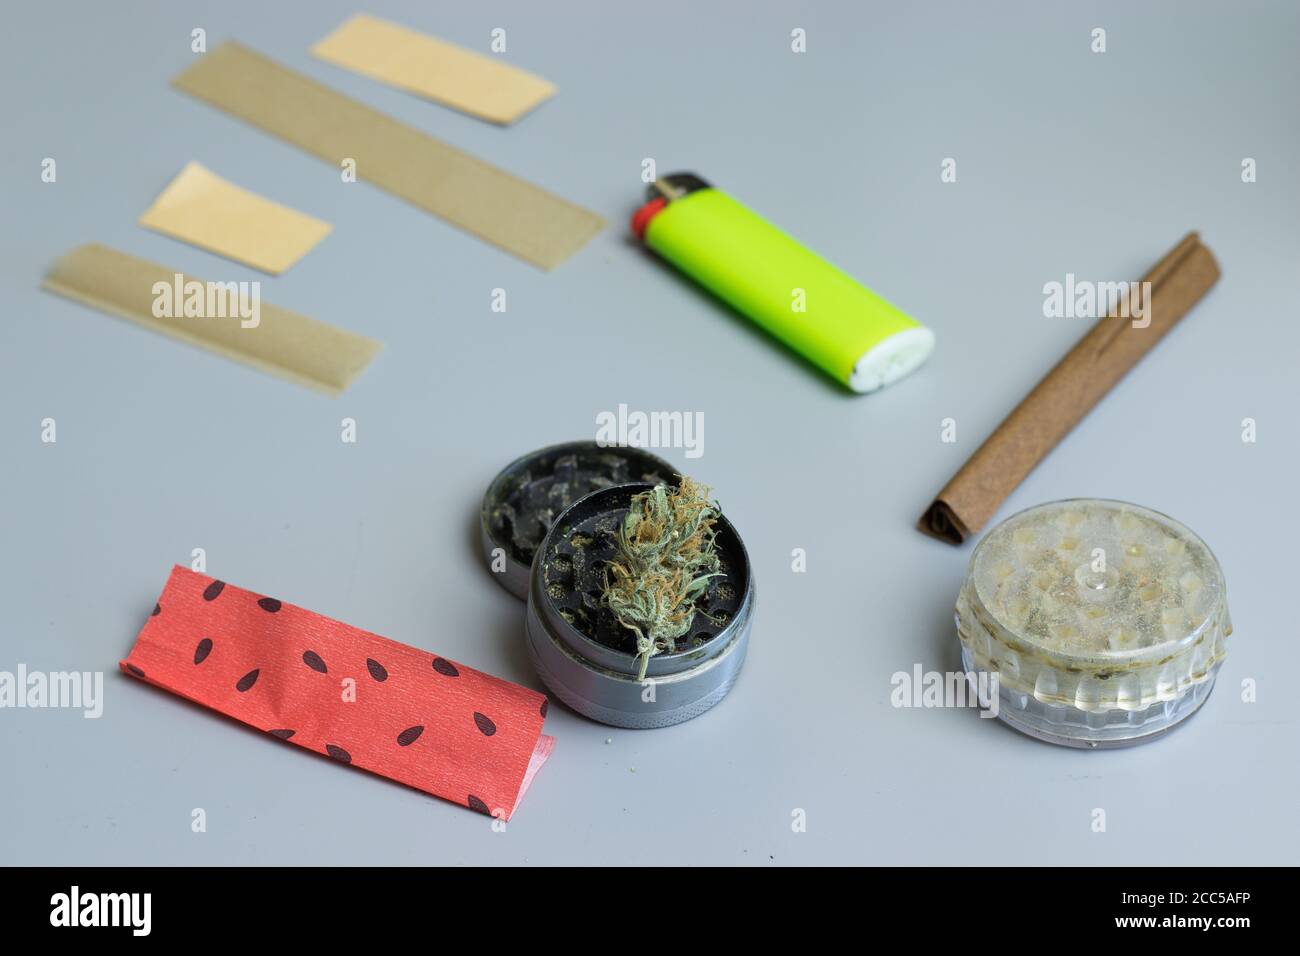 Accesorios para fumar para el consumo de drogas de cannabis. Brotes de marihuana Foto de stock